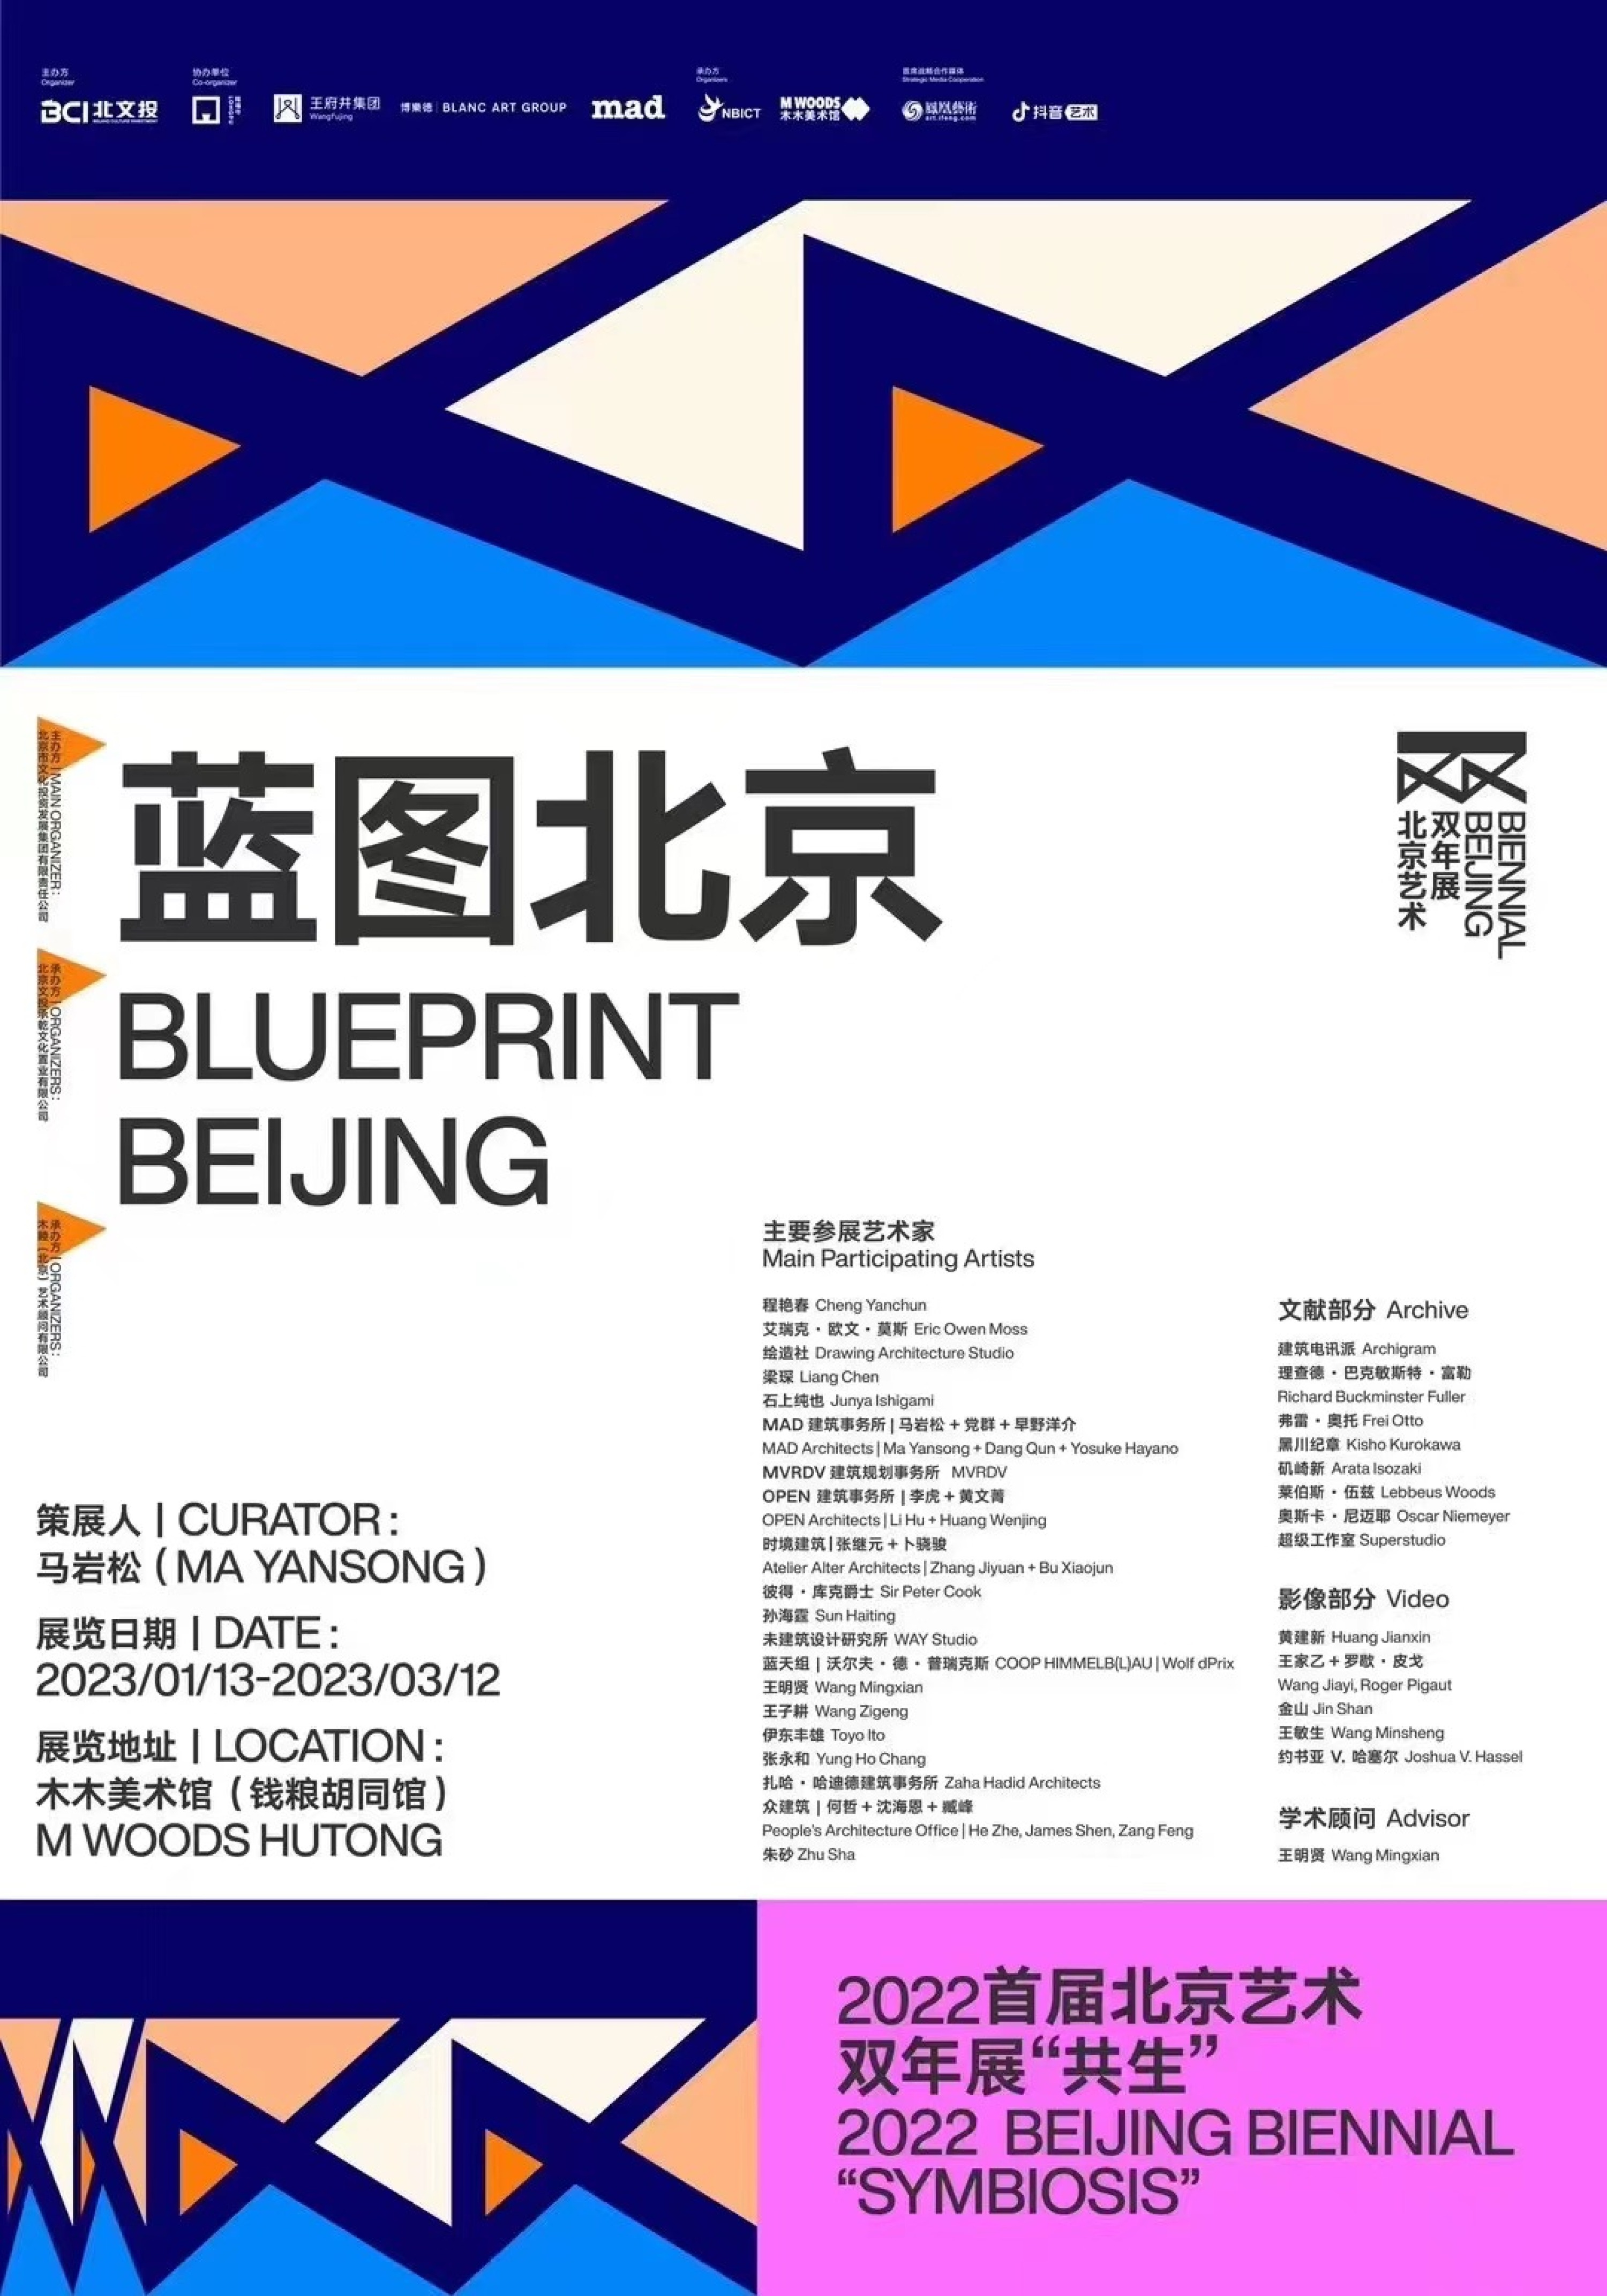 王子耕作品《想像の北京》は初回北京アートビエンナーレ2022建築部門「ブループリント・北京」に出展